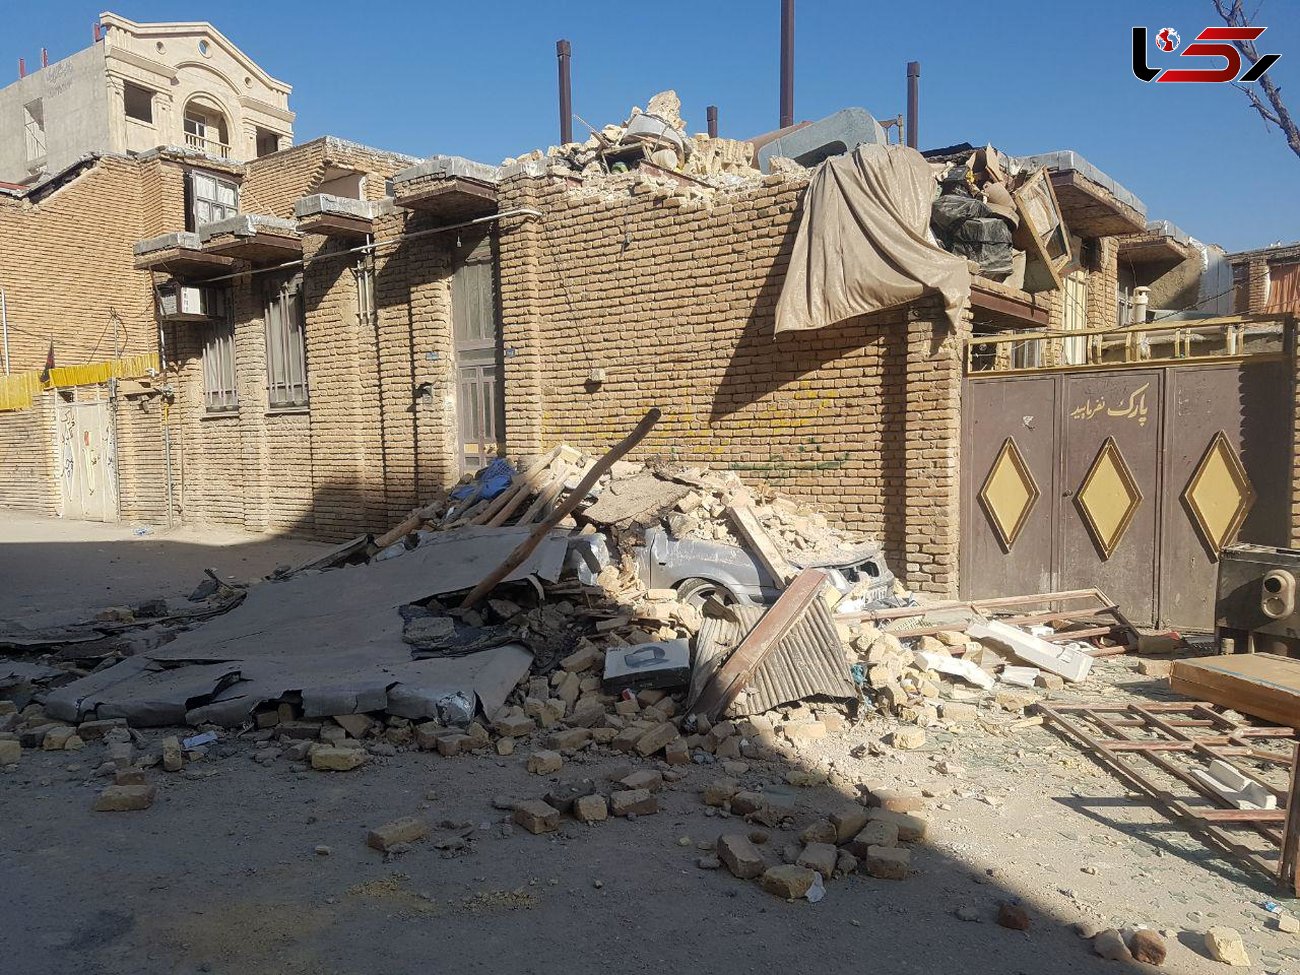 ست‌های سرویس بهداشتی و حمام پیش‌ساخته نیروی زمینی سپاه امروز وارد مناطق زلزله زده می شود